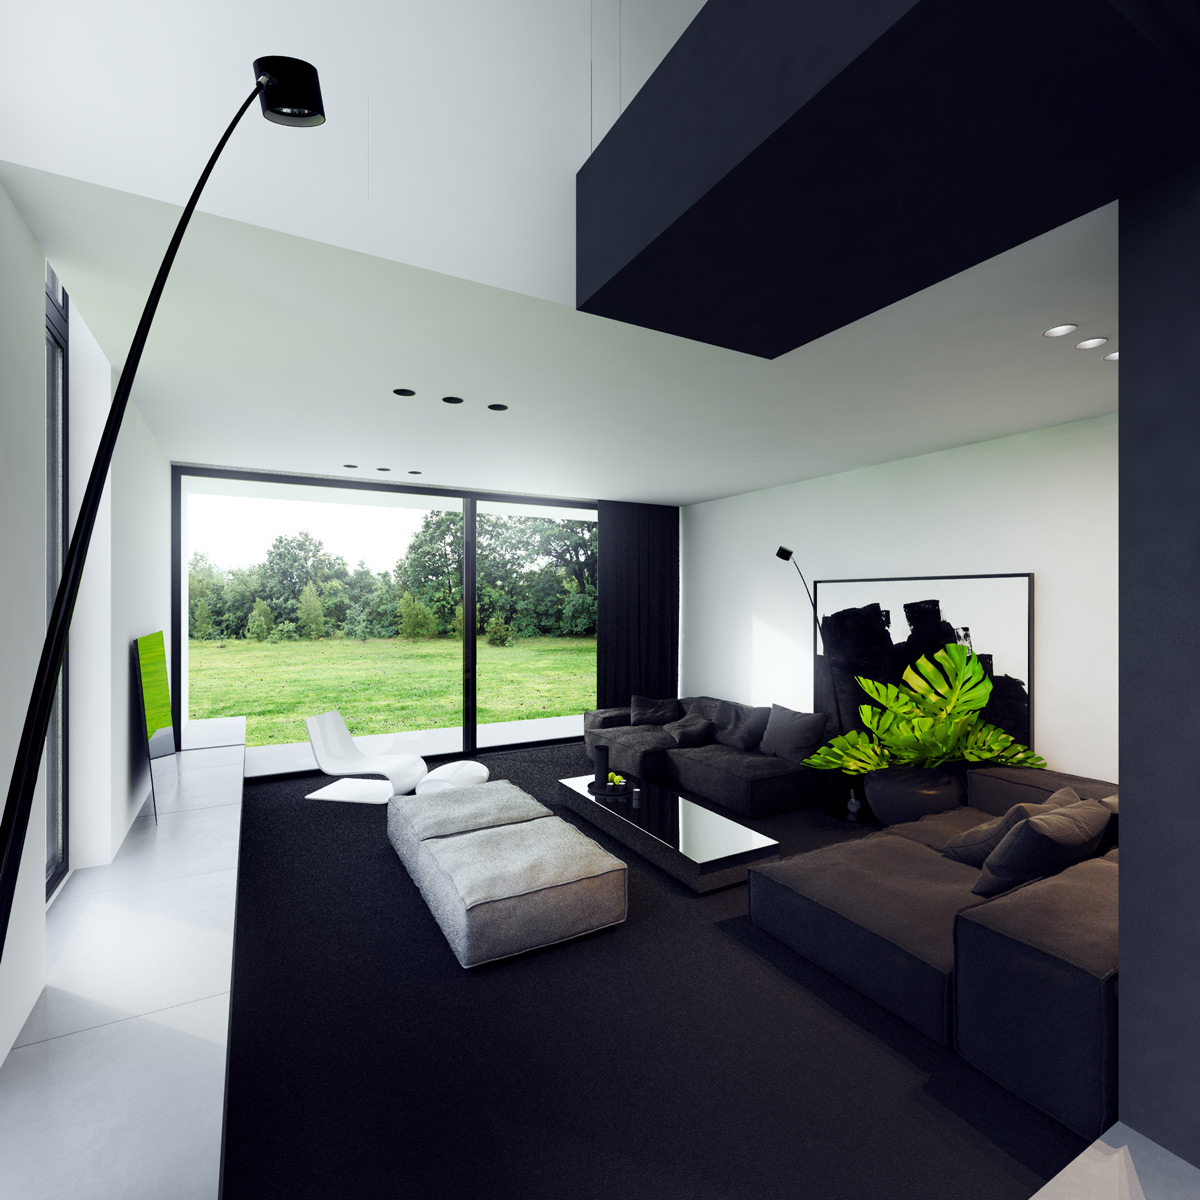 Để không gian phòng khách trắng – đen bớt ảm đạm, bạn có thể kết hợp với trần nhà, thảm và rèm màu xanh navy. Cùng với chiếc chân đèn màu đen độc đáo, chậu cây và tác phẩm nghệ thuật ấn tượng, căn phòng trở nên thật cá tính và thú vị.